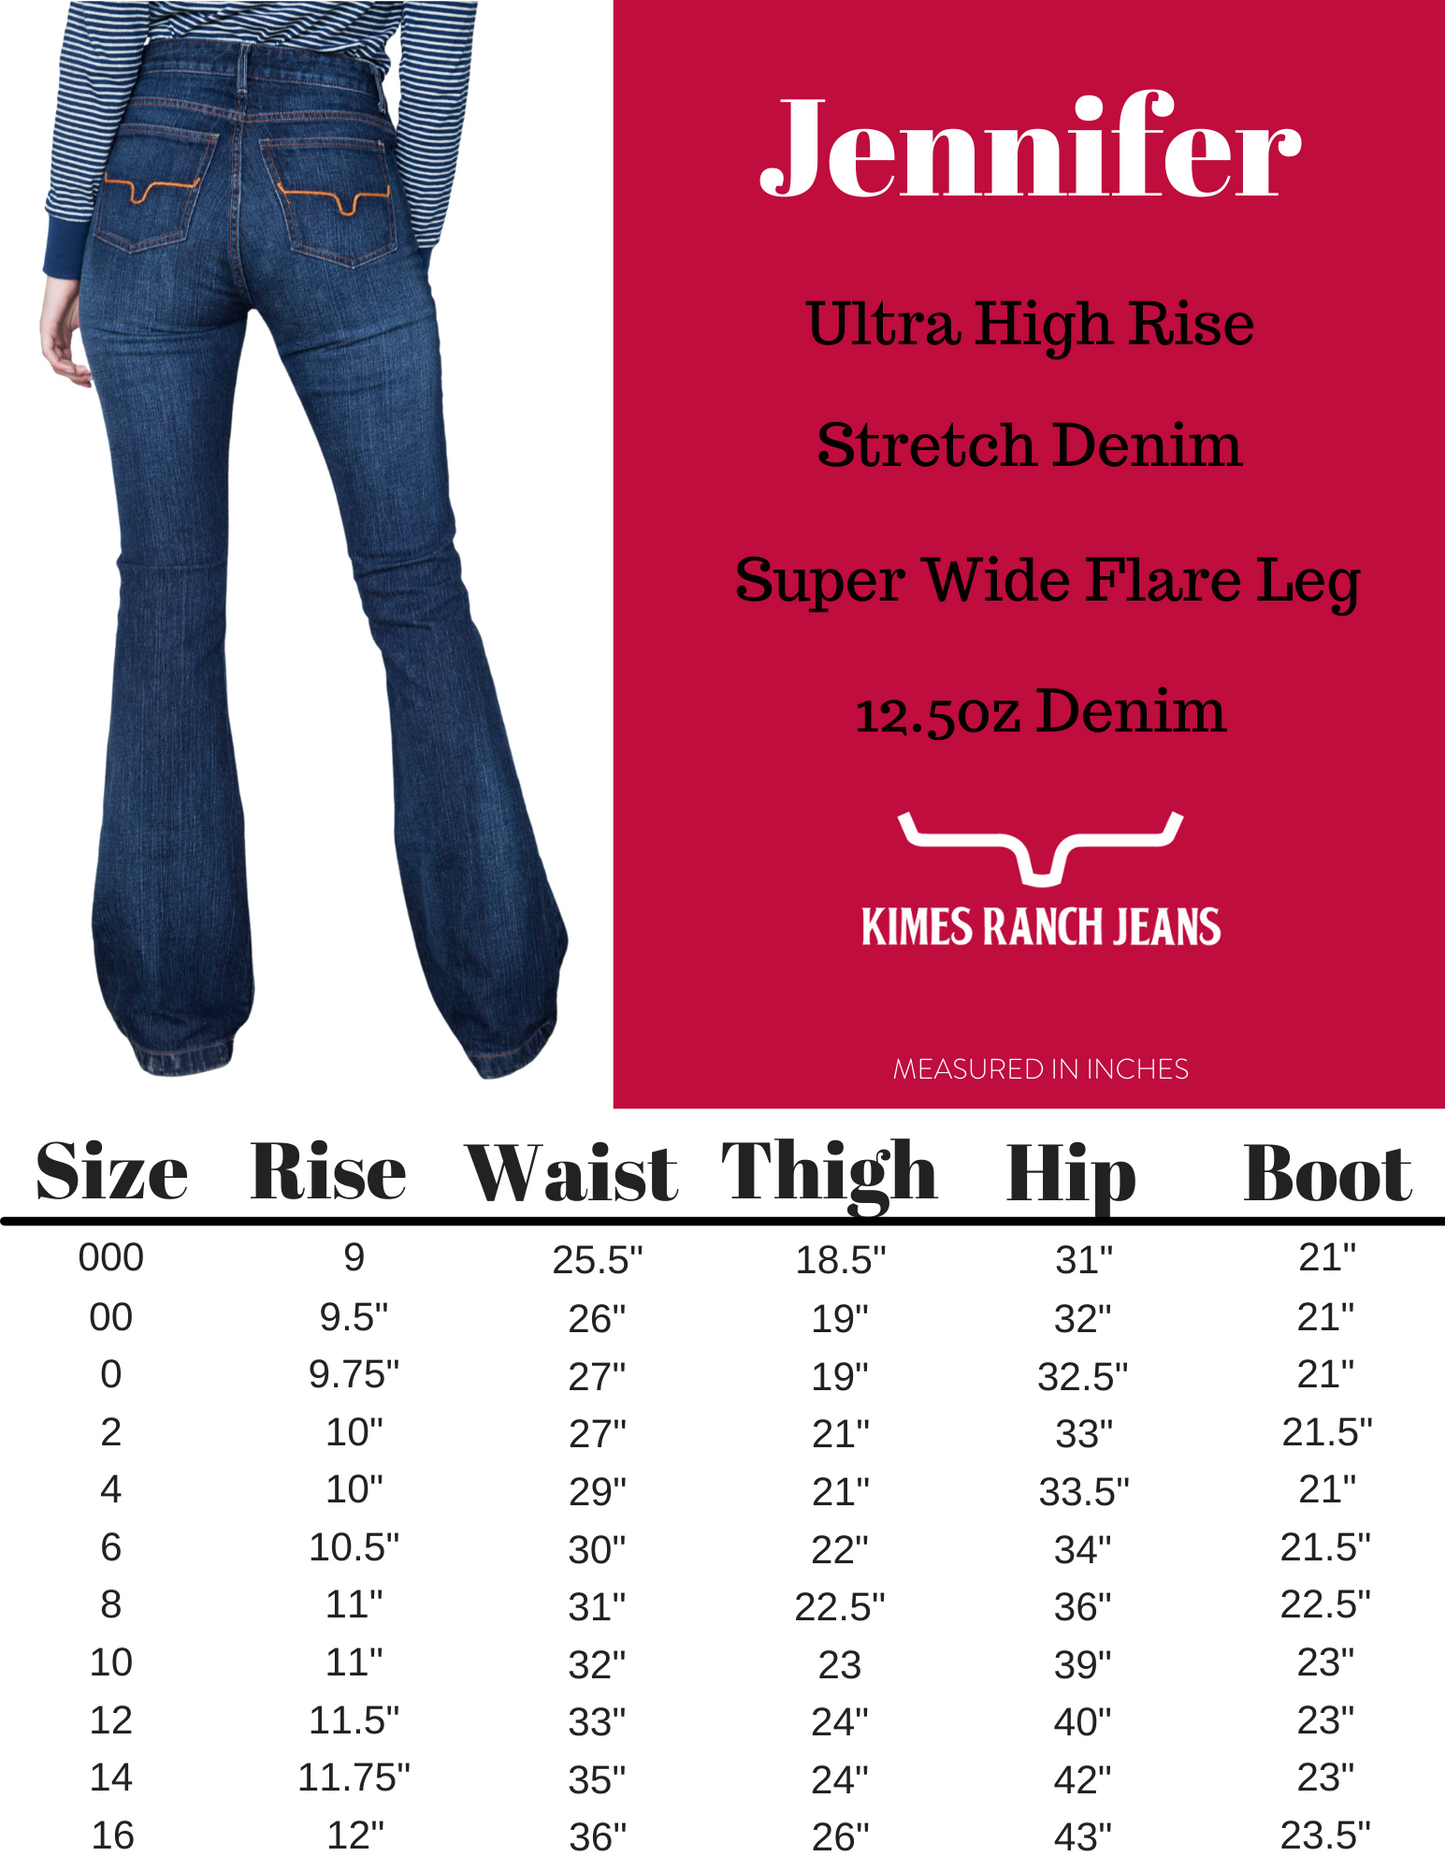 Kimes Ranch USA Ladies Jennifer Jeans - 30", 32", 34" and 36" Leg - Blue